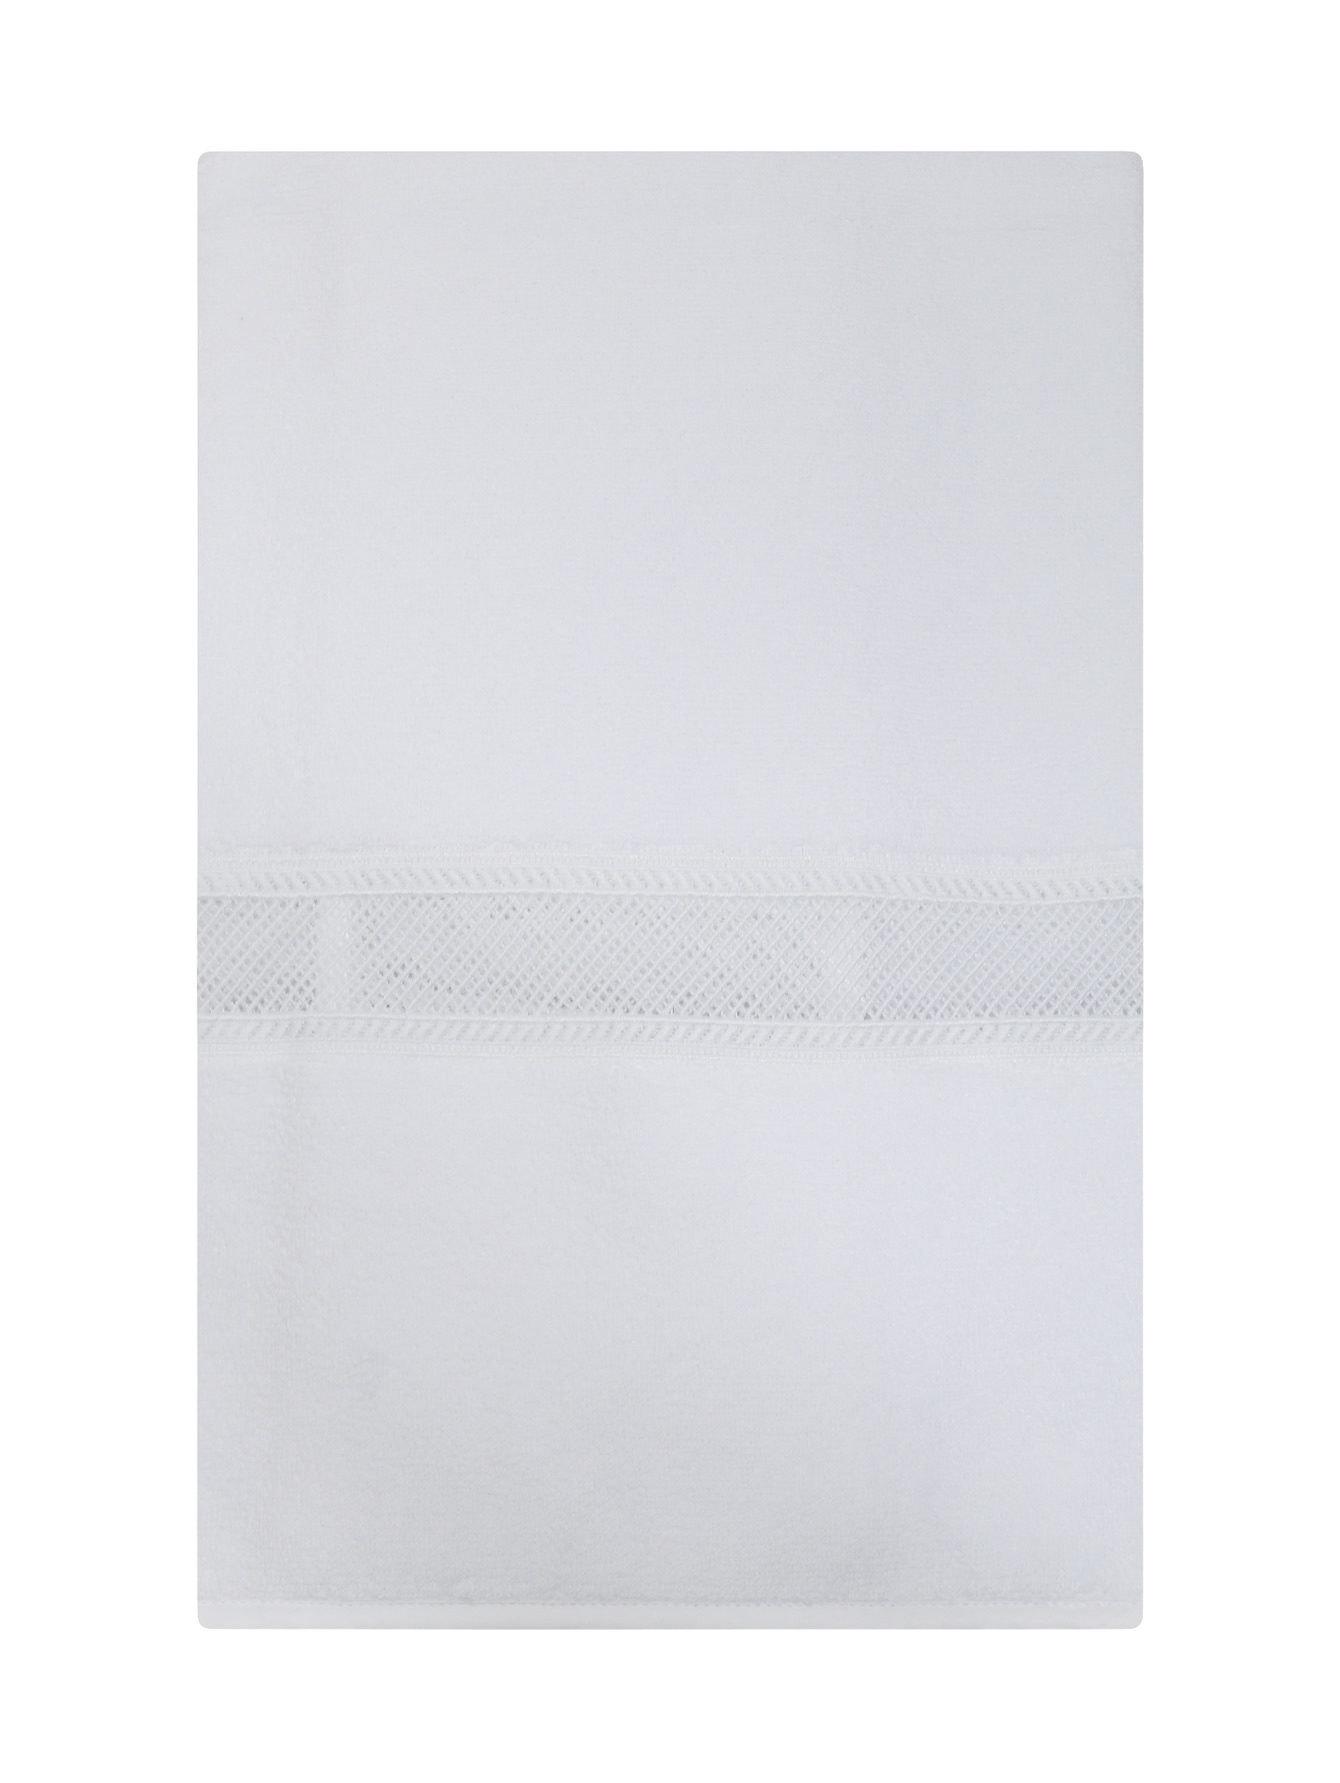 Полотенце из хлопковой махровой ткани с кружевной вставкой  - Обтравка1